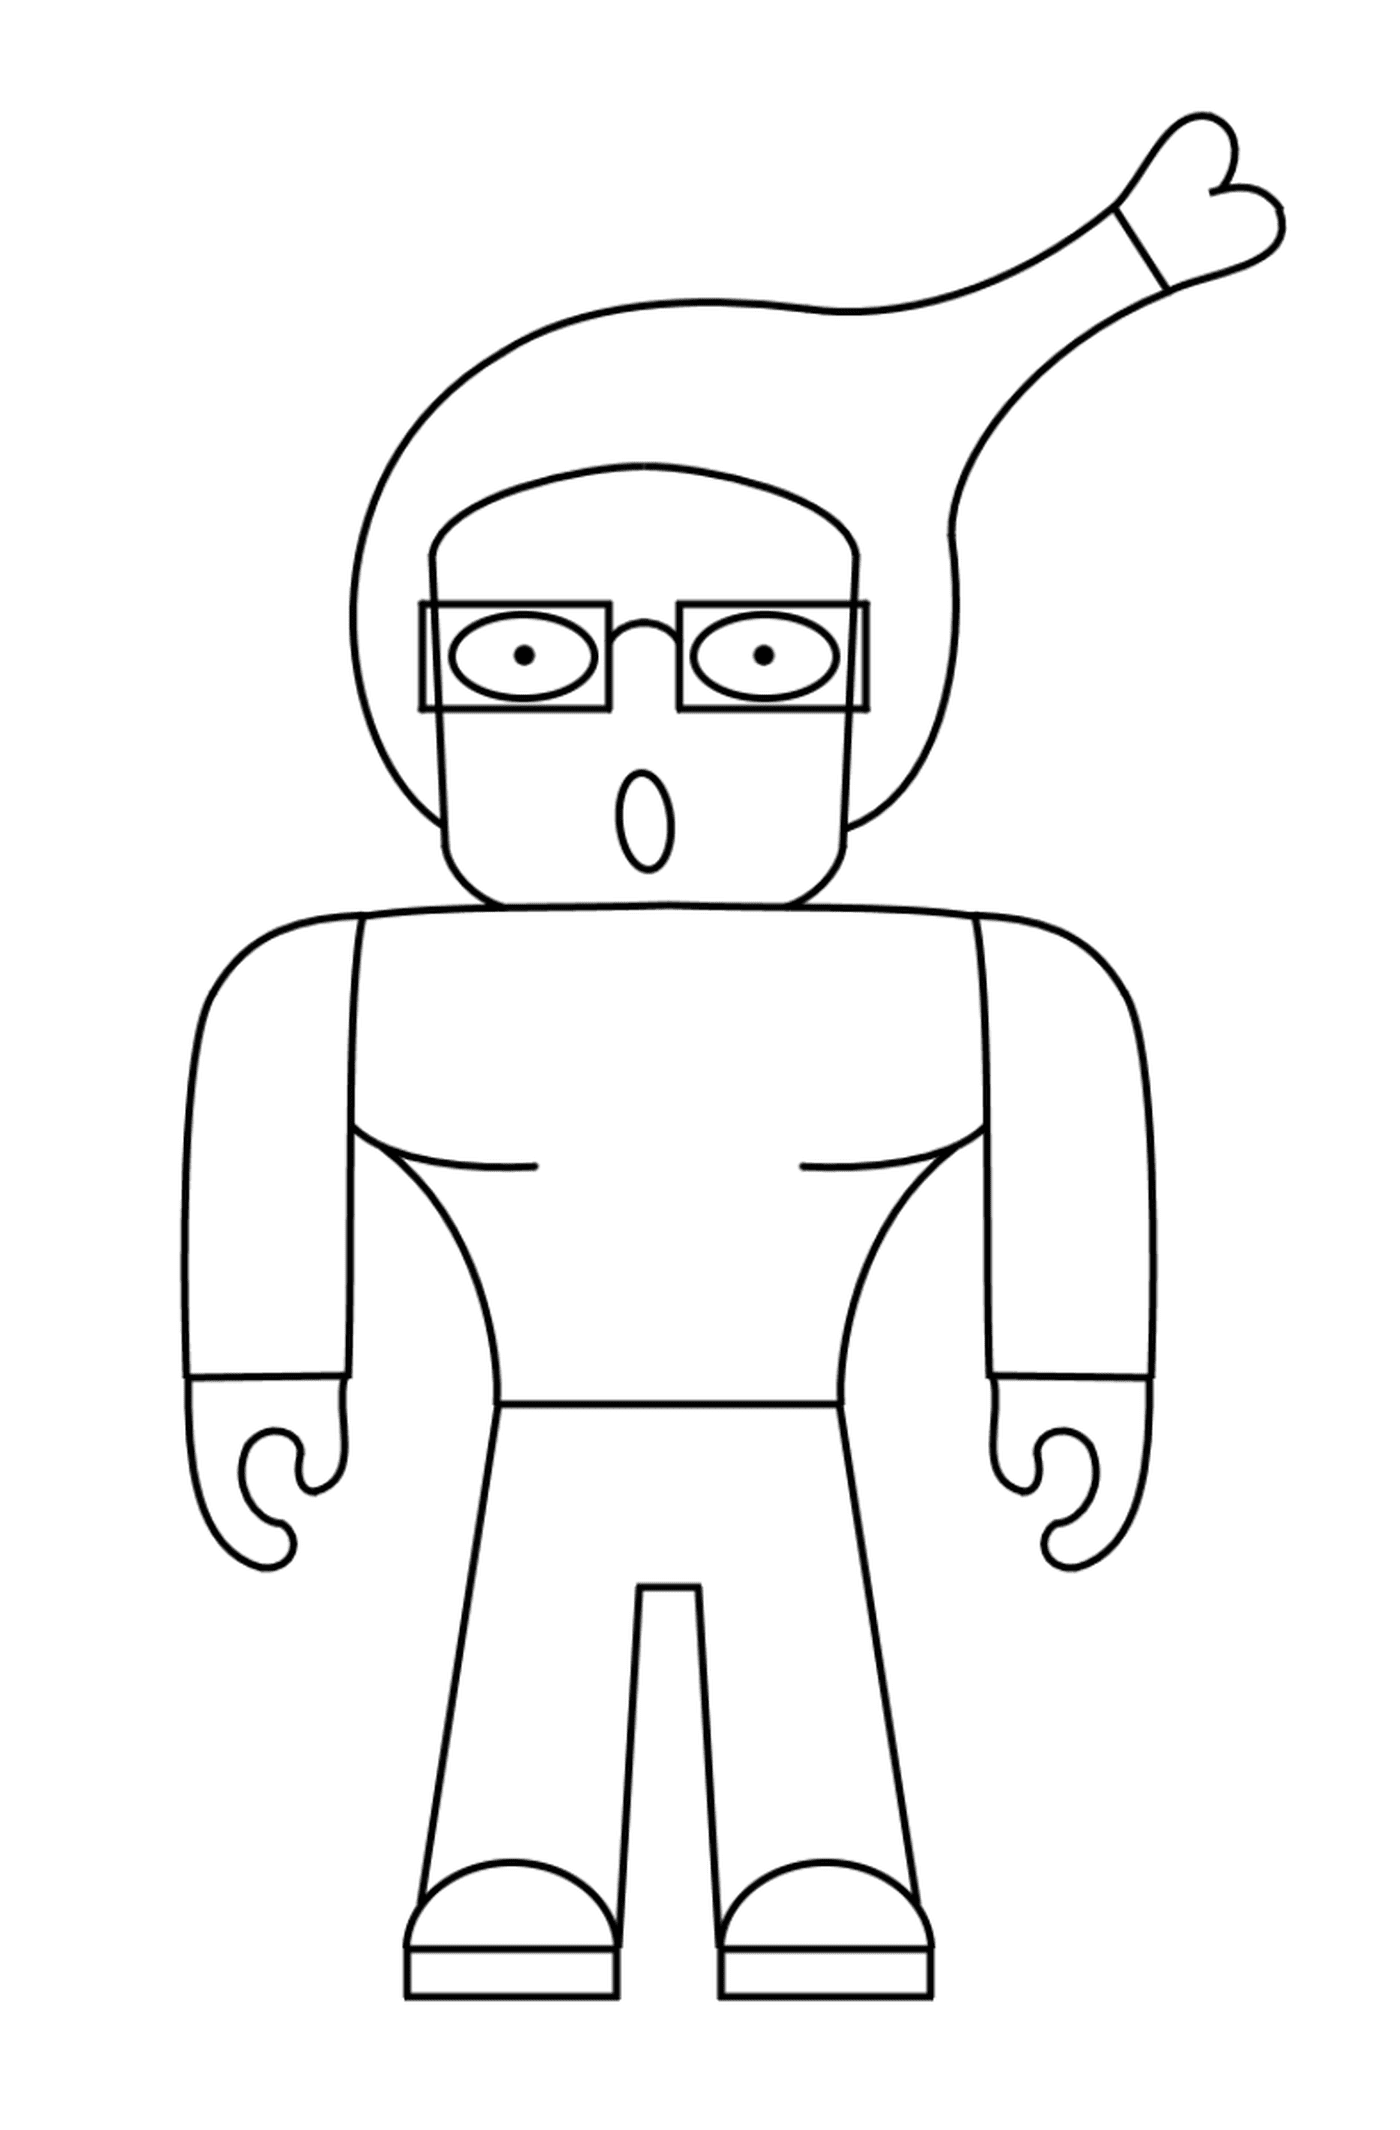  Raro personaje humano Roblox 